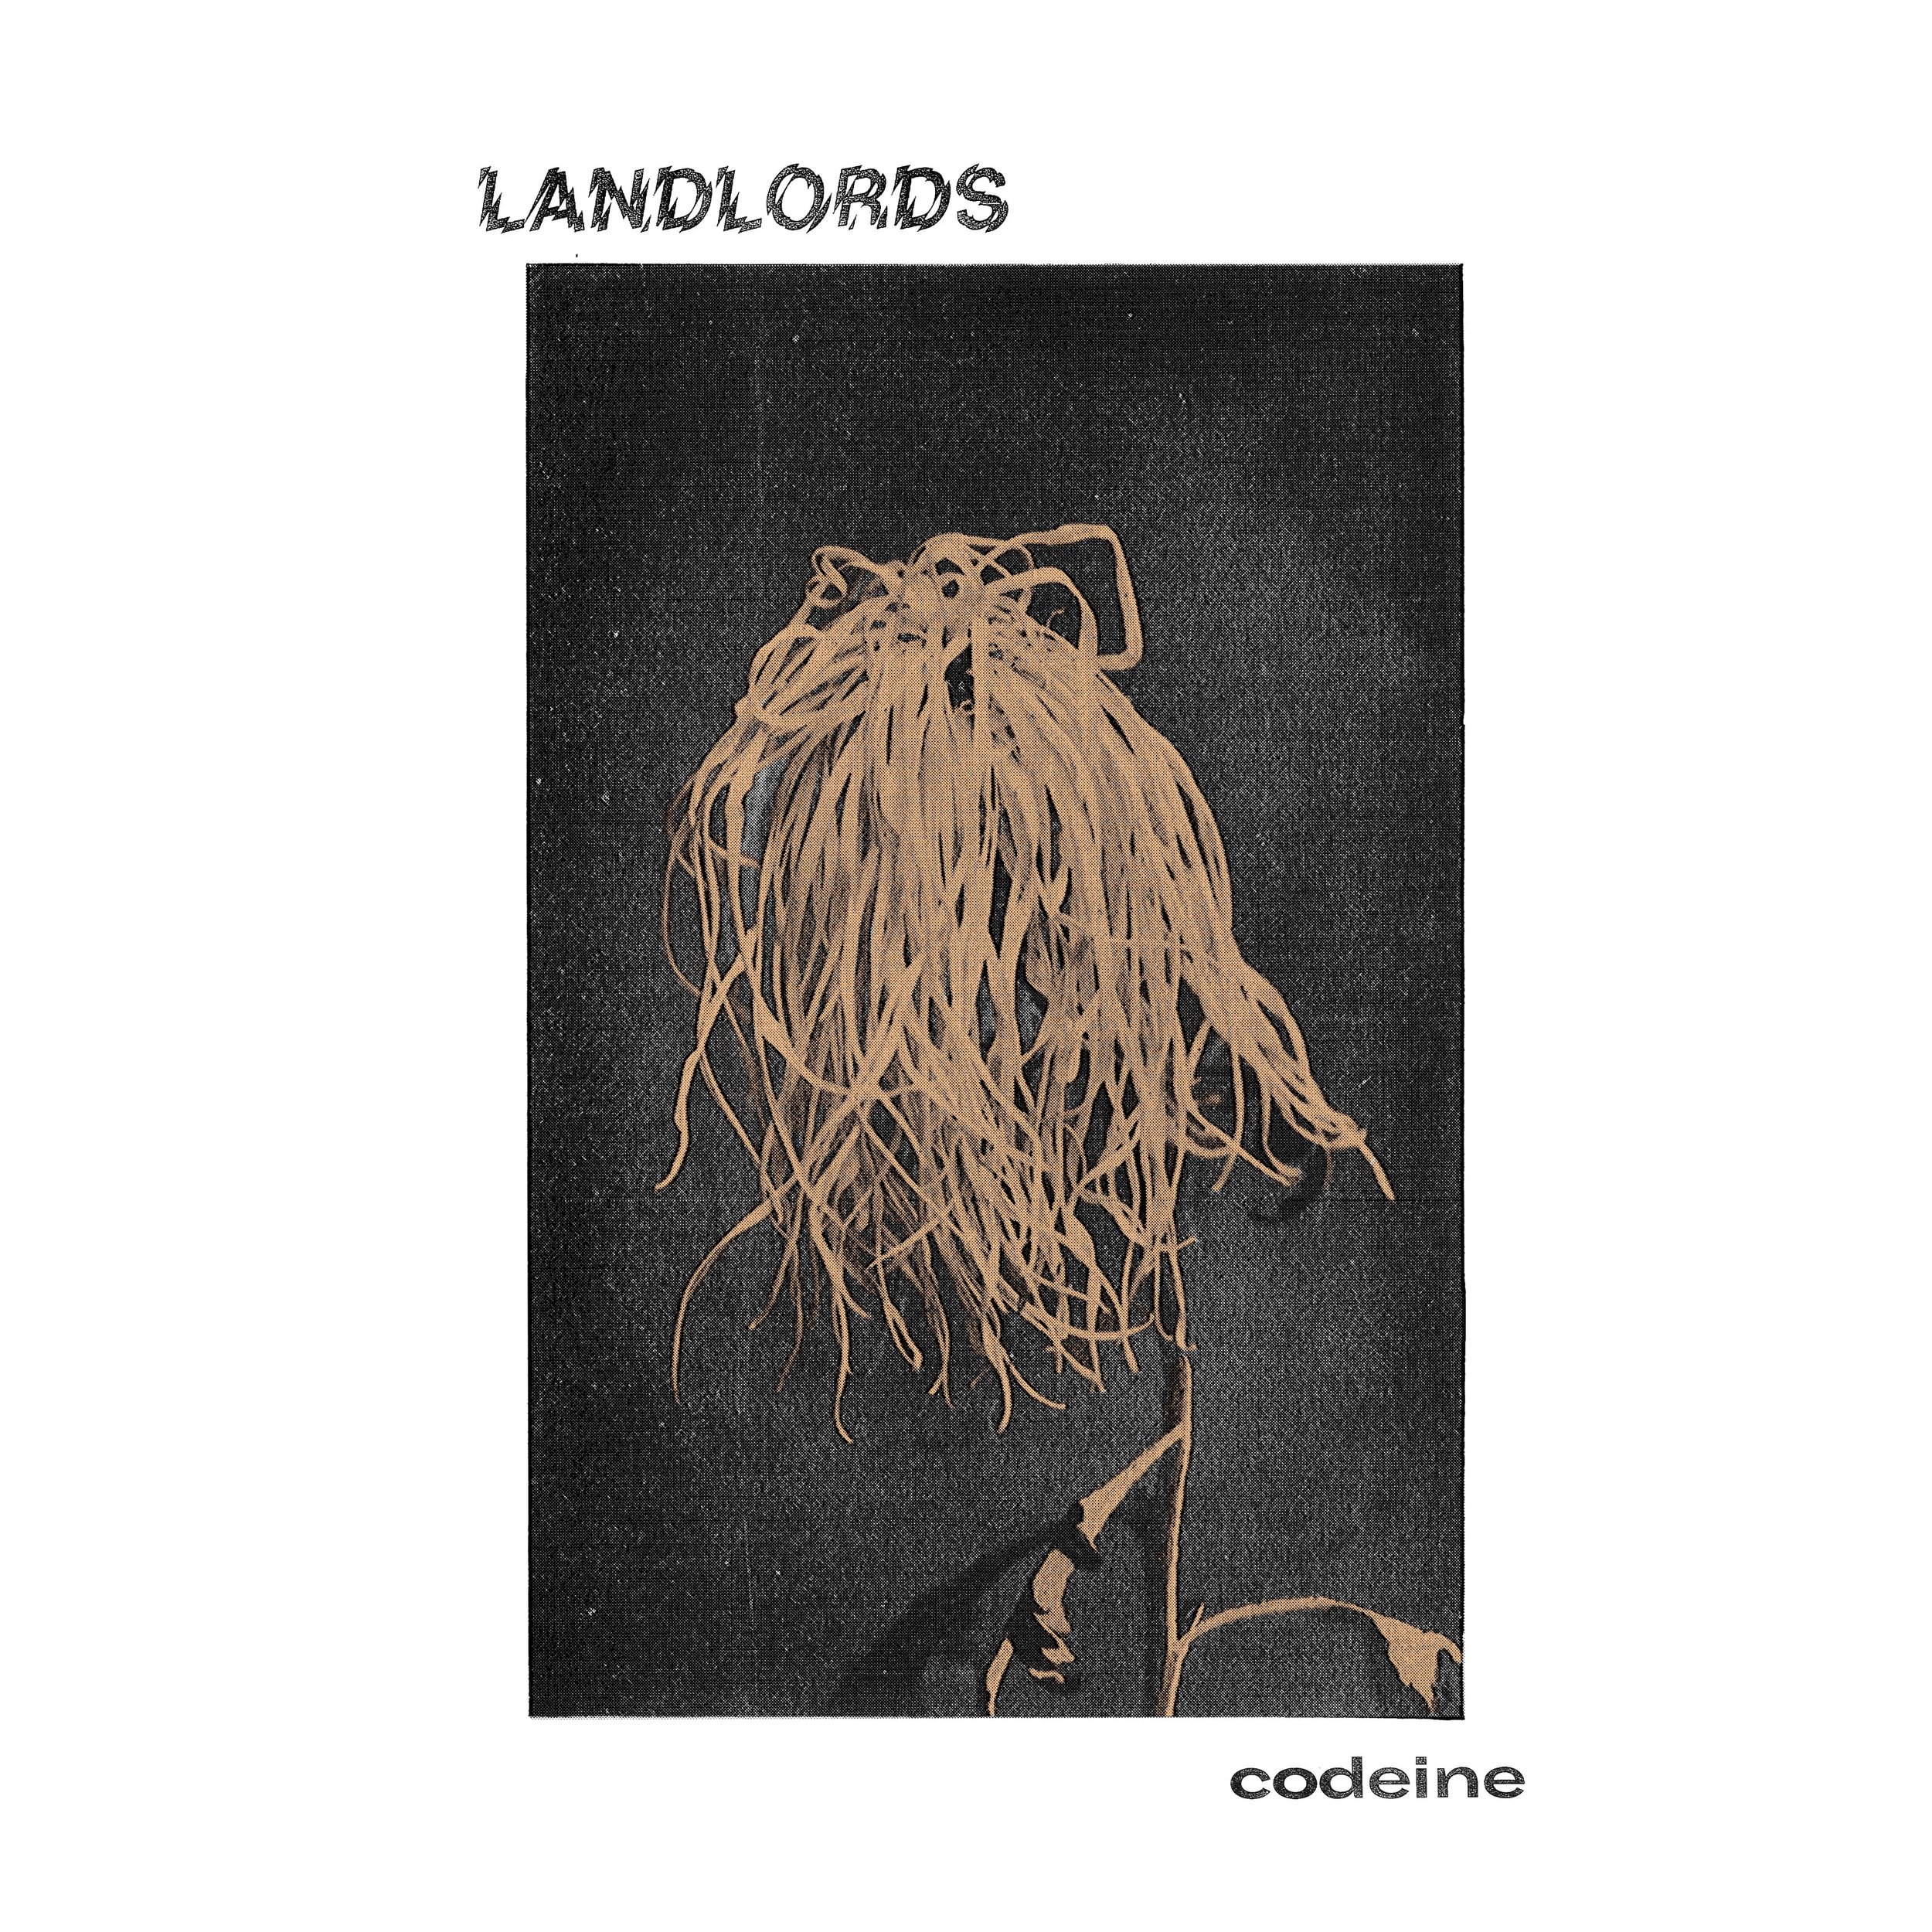 Landlords - Codeine - Cover.jpg